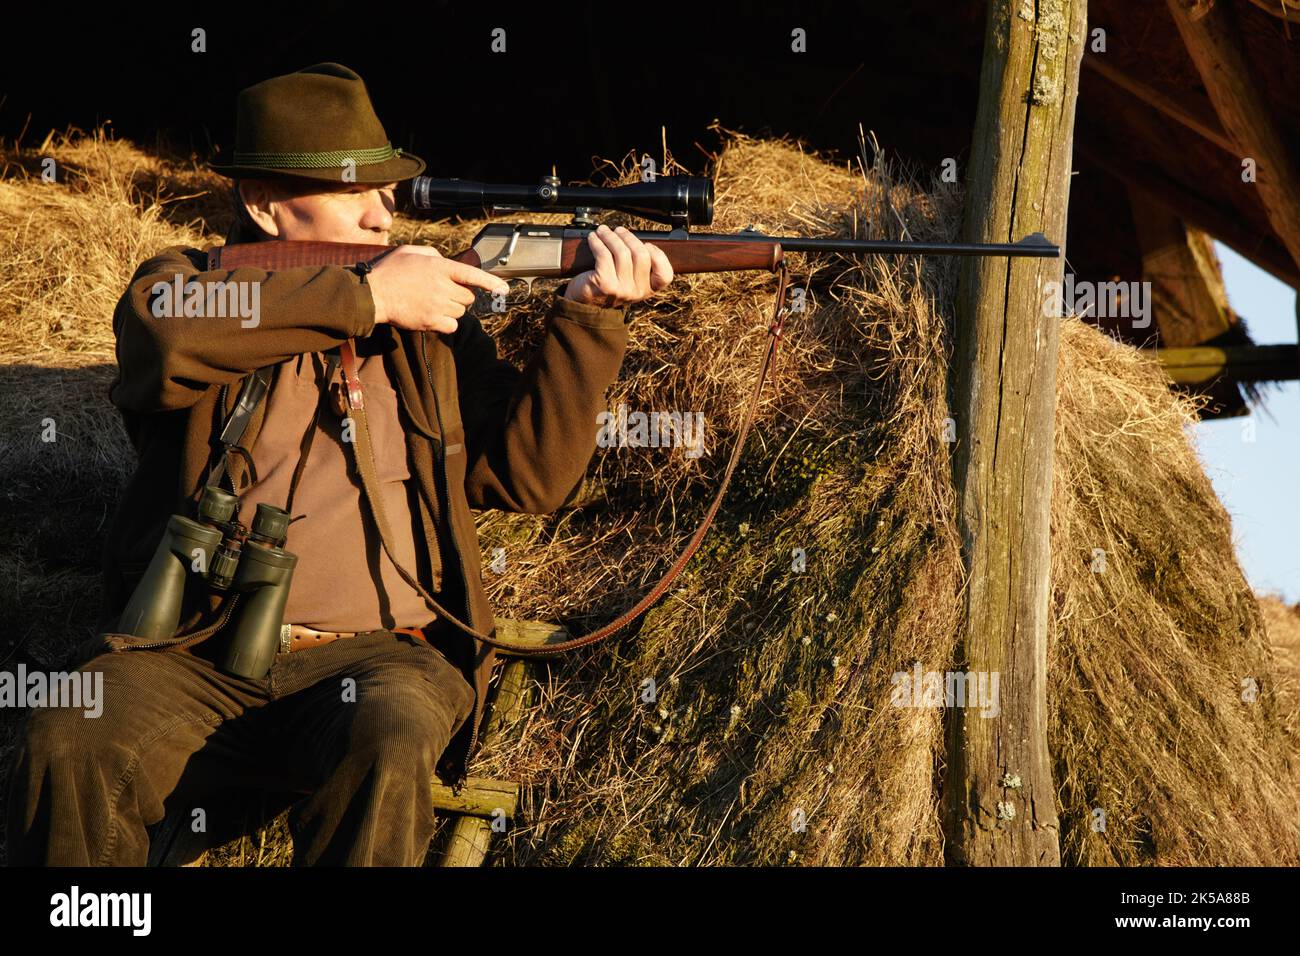 Ziel ist der Schlüssel. Ein Mann in Tarnung sitzt und mit seinem Gewehr auf etwas in einer Wildtierumgebung zielt. Stockfoto